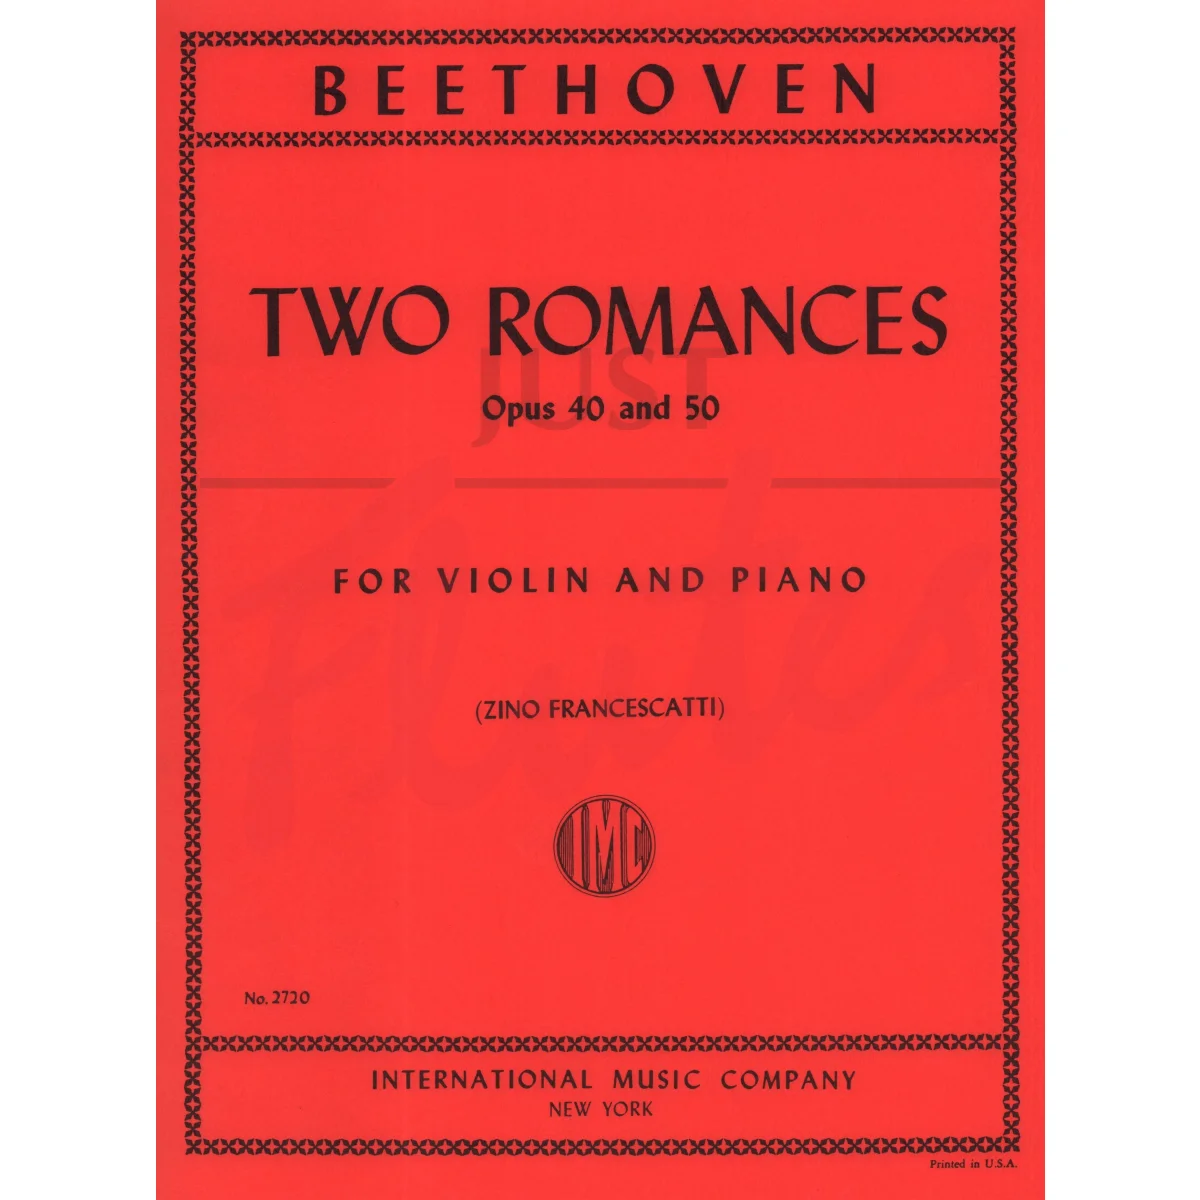 2 Romances for Violin and Piano